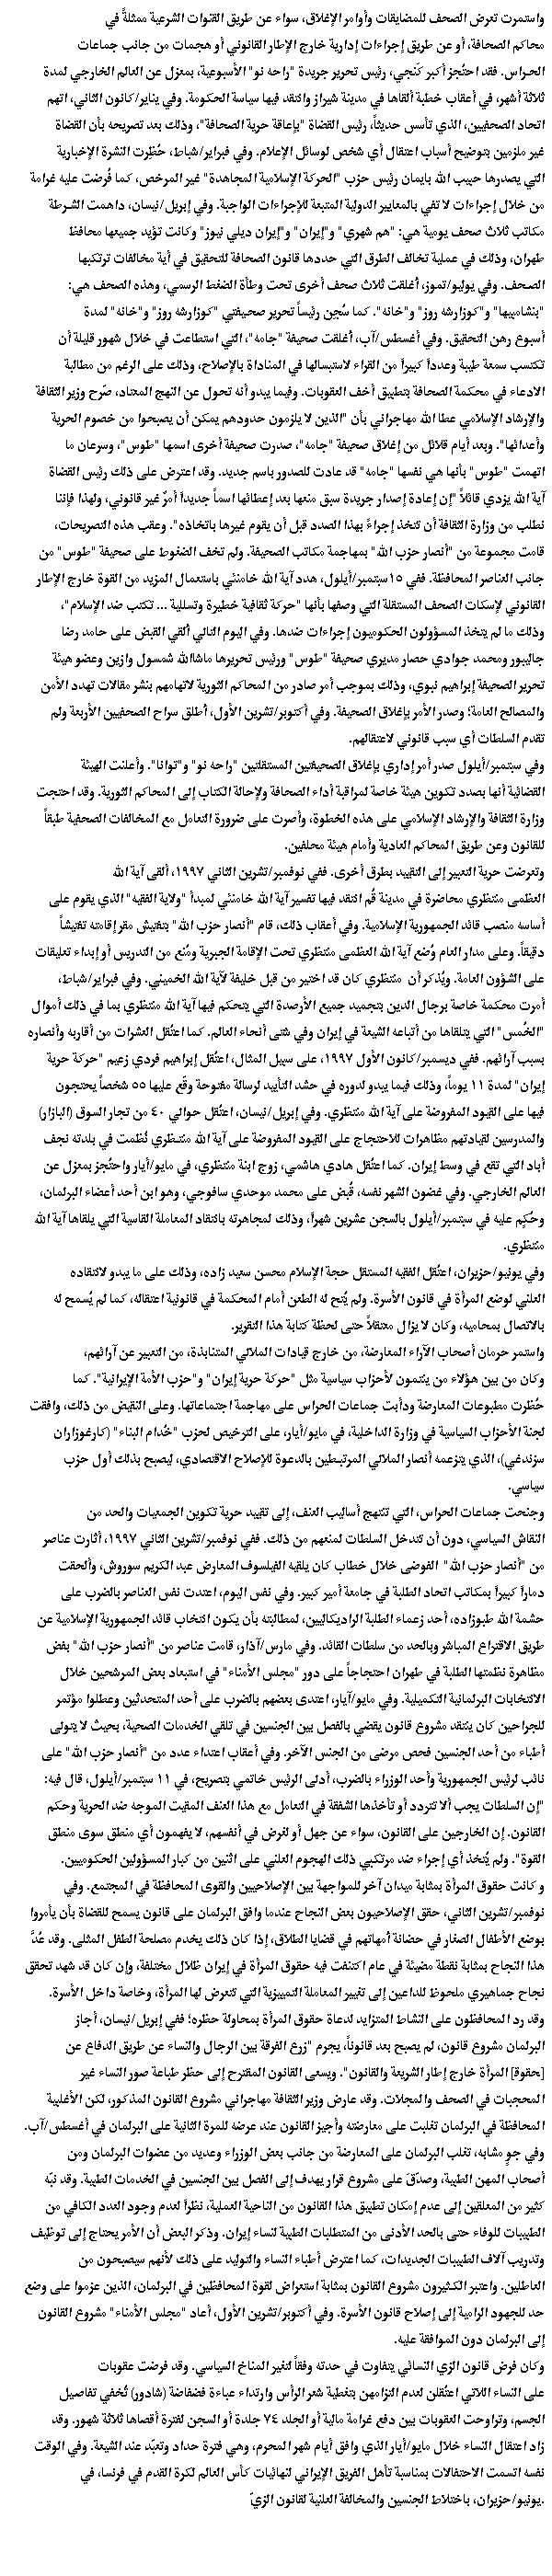 hr development Iran part 11